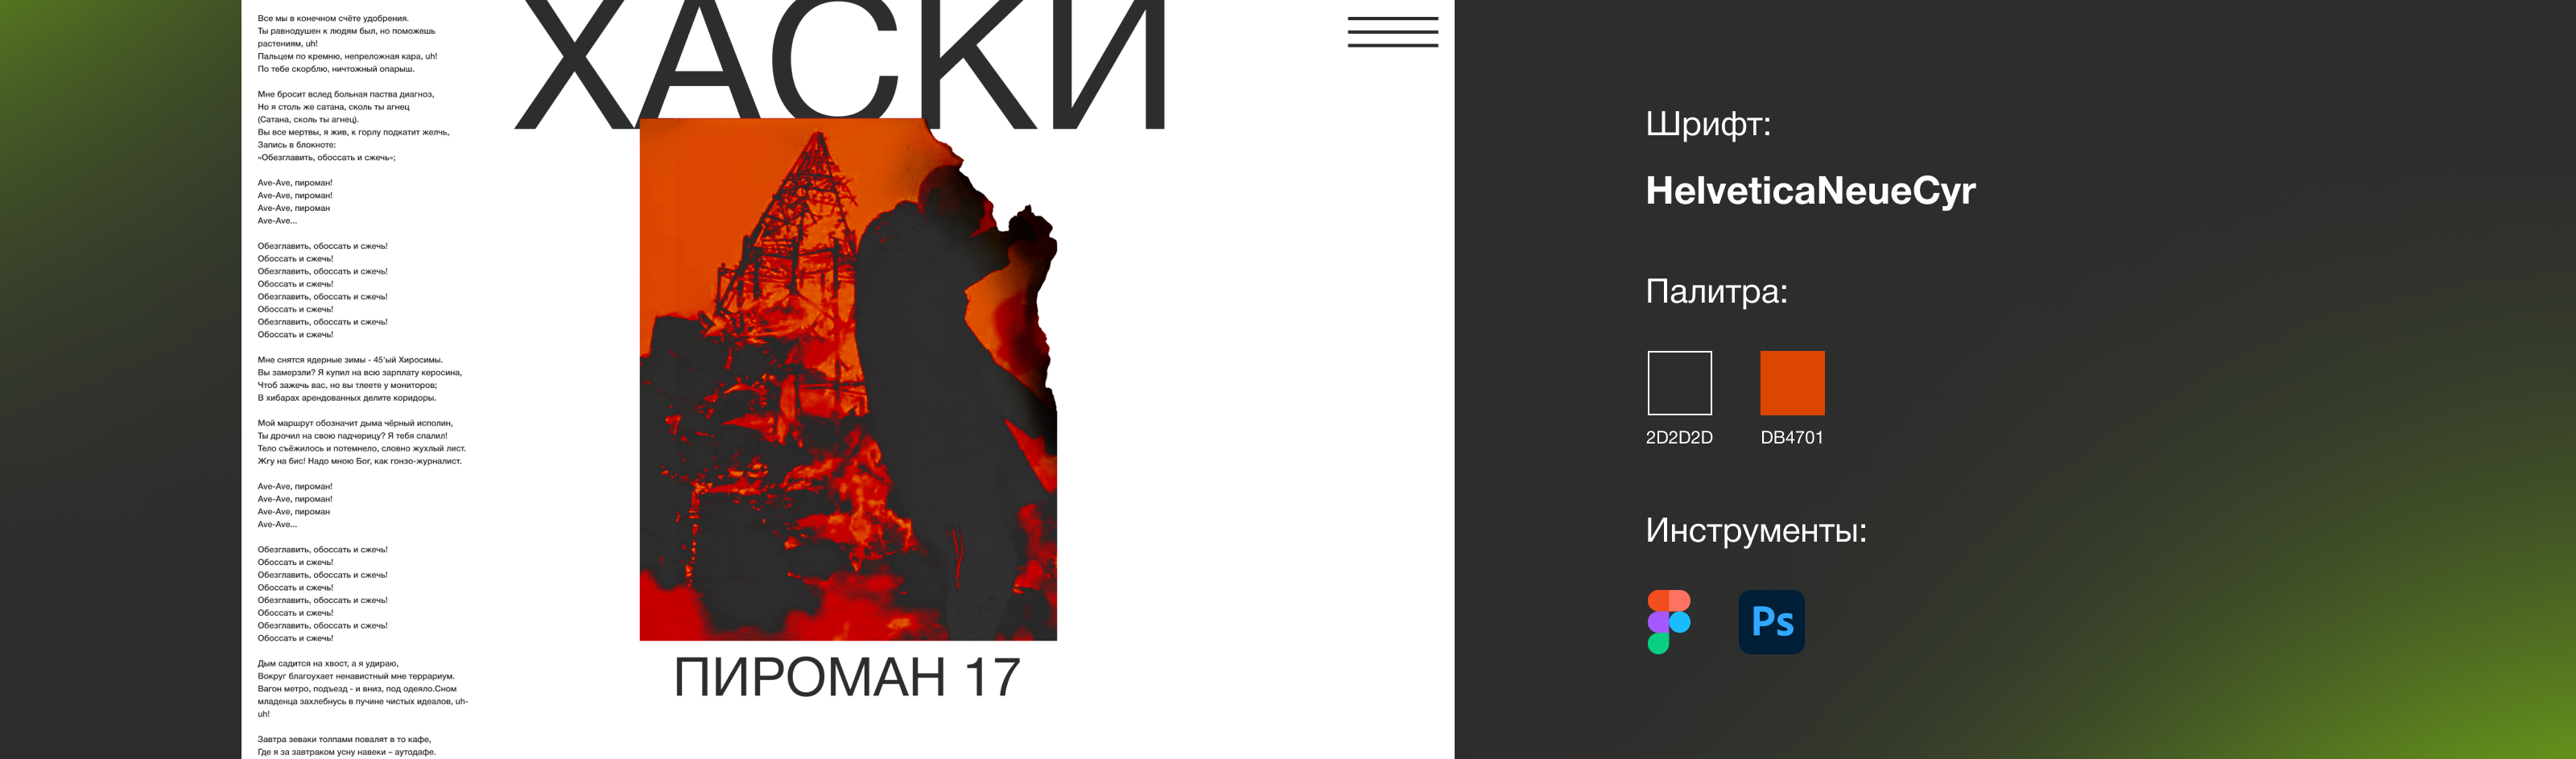 ХАСКИ — Пироман 17. Дизайн первого экрана — Изображение №3 — Интерфейсы, Графика на Dprofile